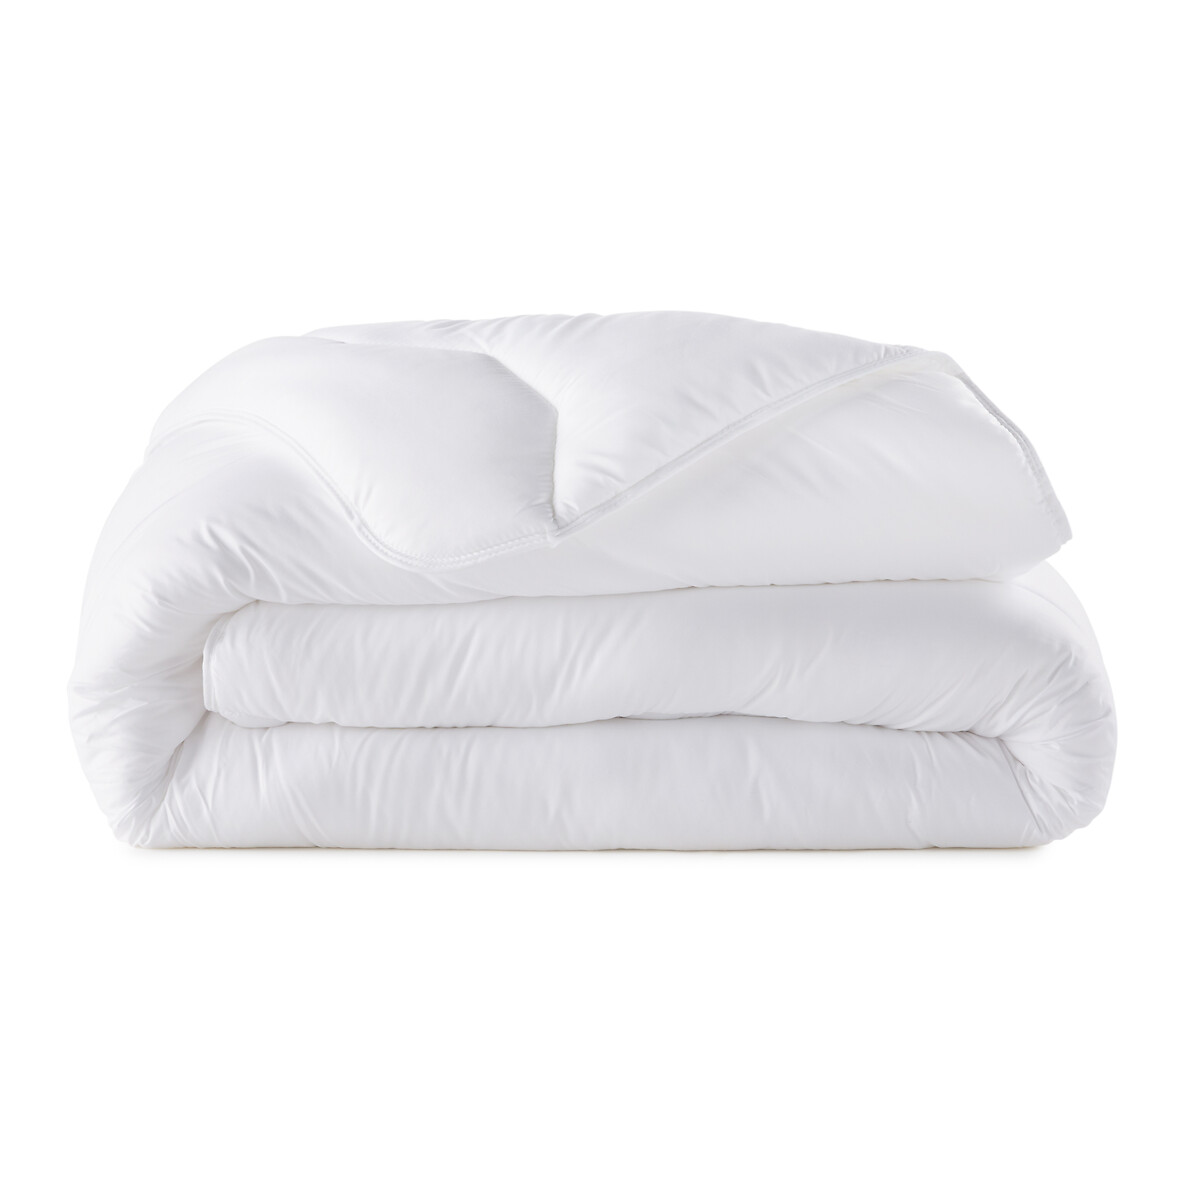 Одеяло LaRedoute Pratique 100 полиэстер высшего качества 240 x 220 см белый, размер 240 x 220 см - фото 2